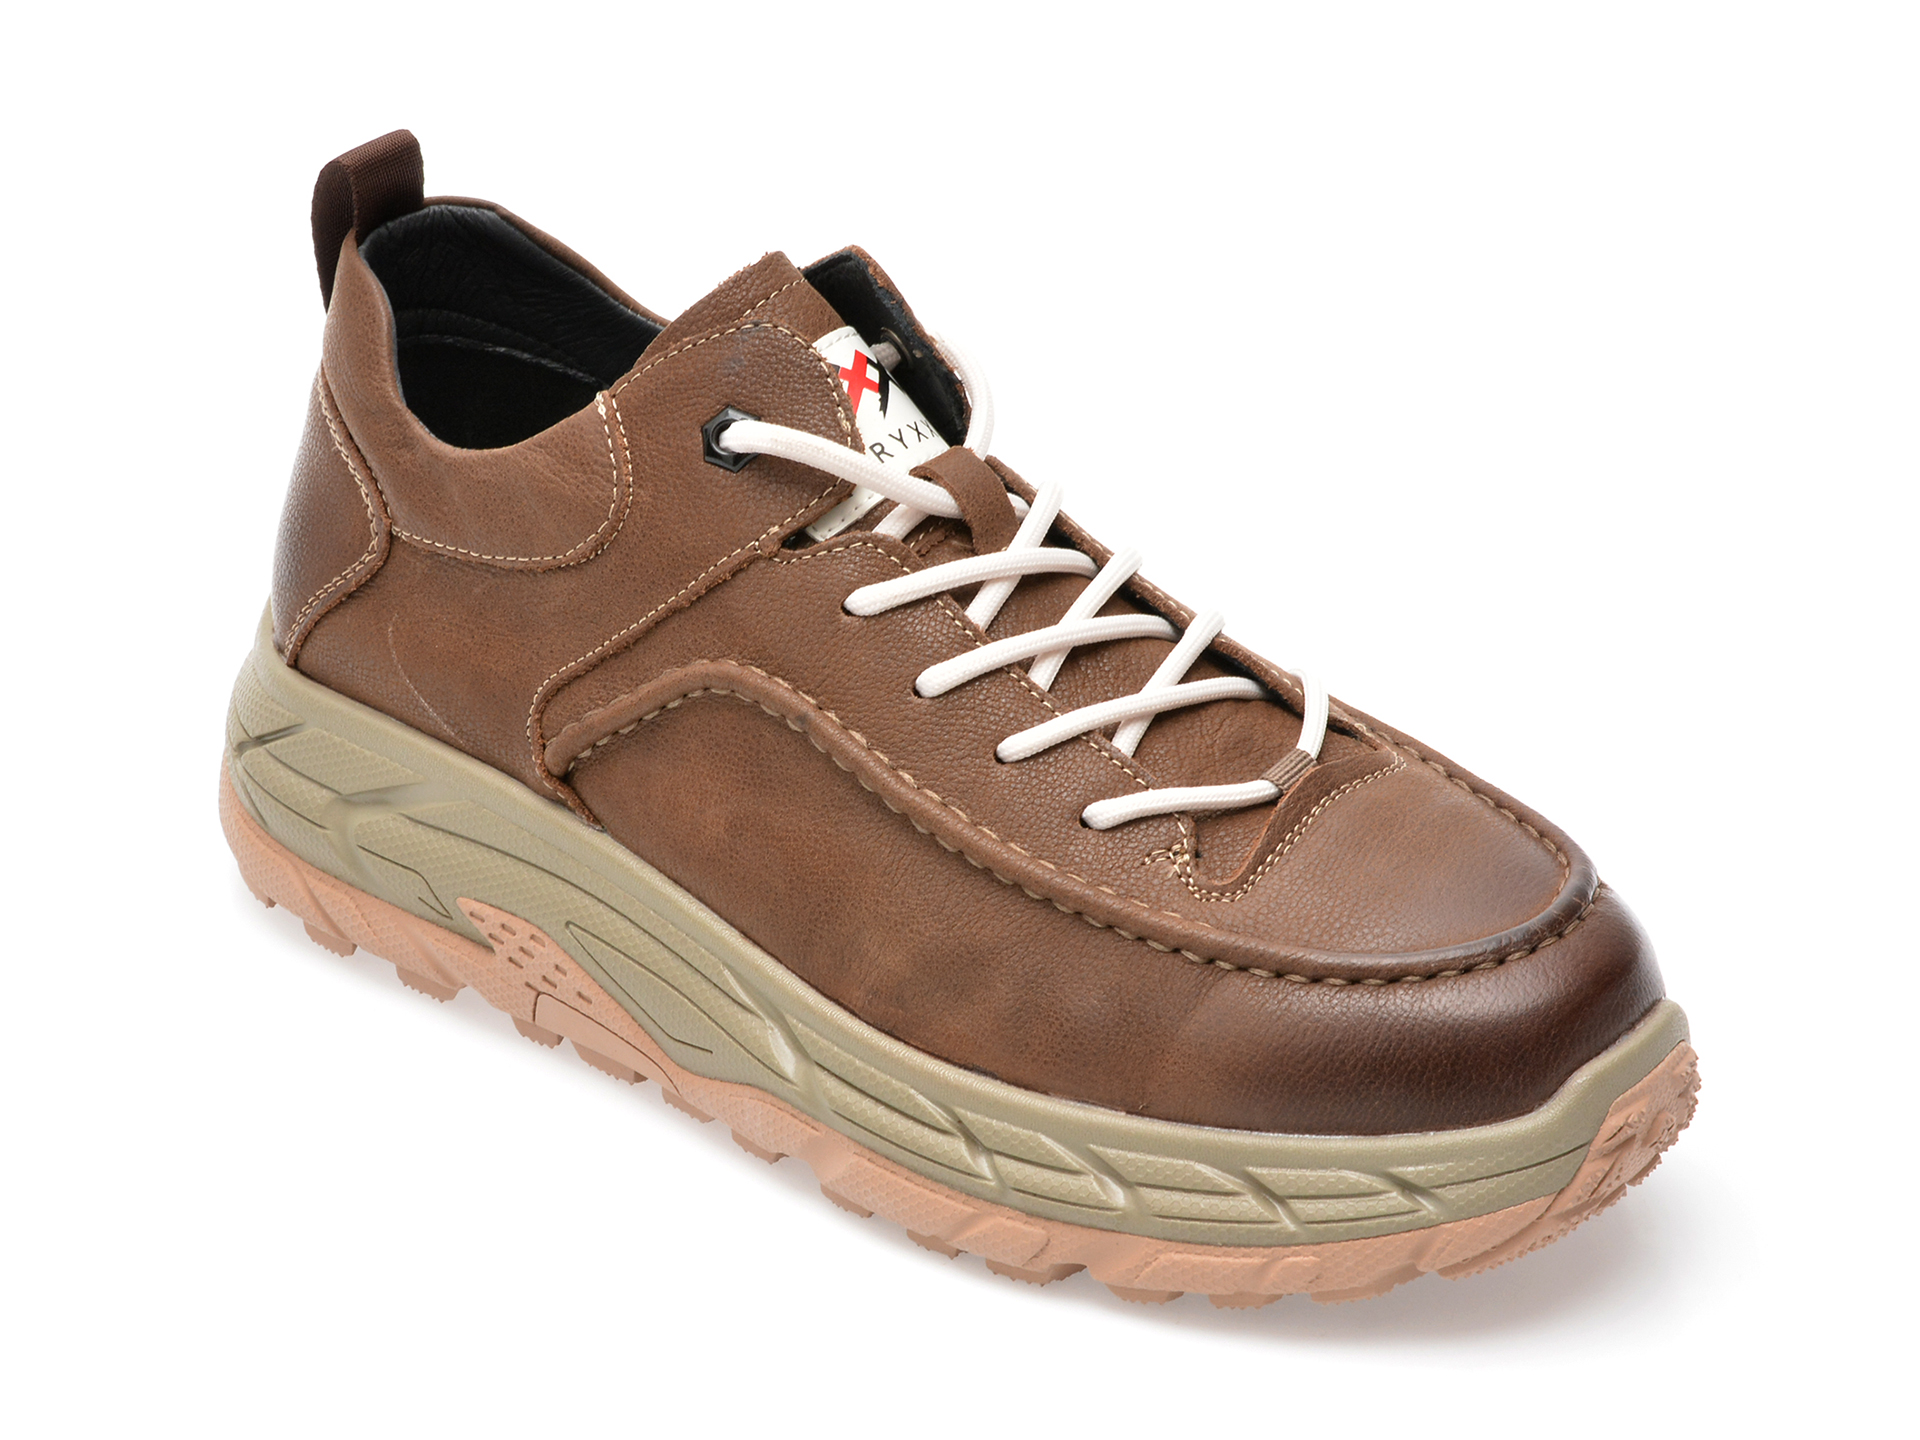 Pantofi GRYXX maro, 33078, din piele naturala